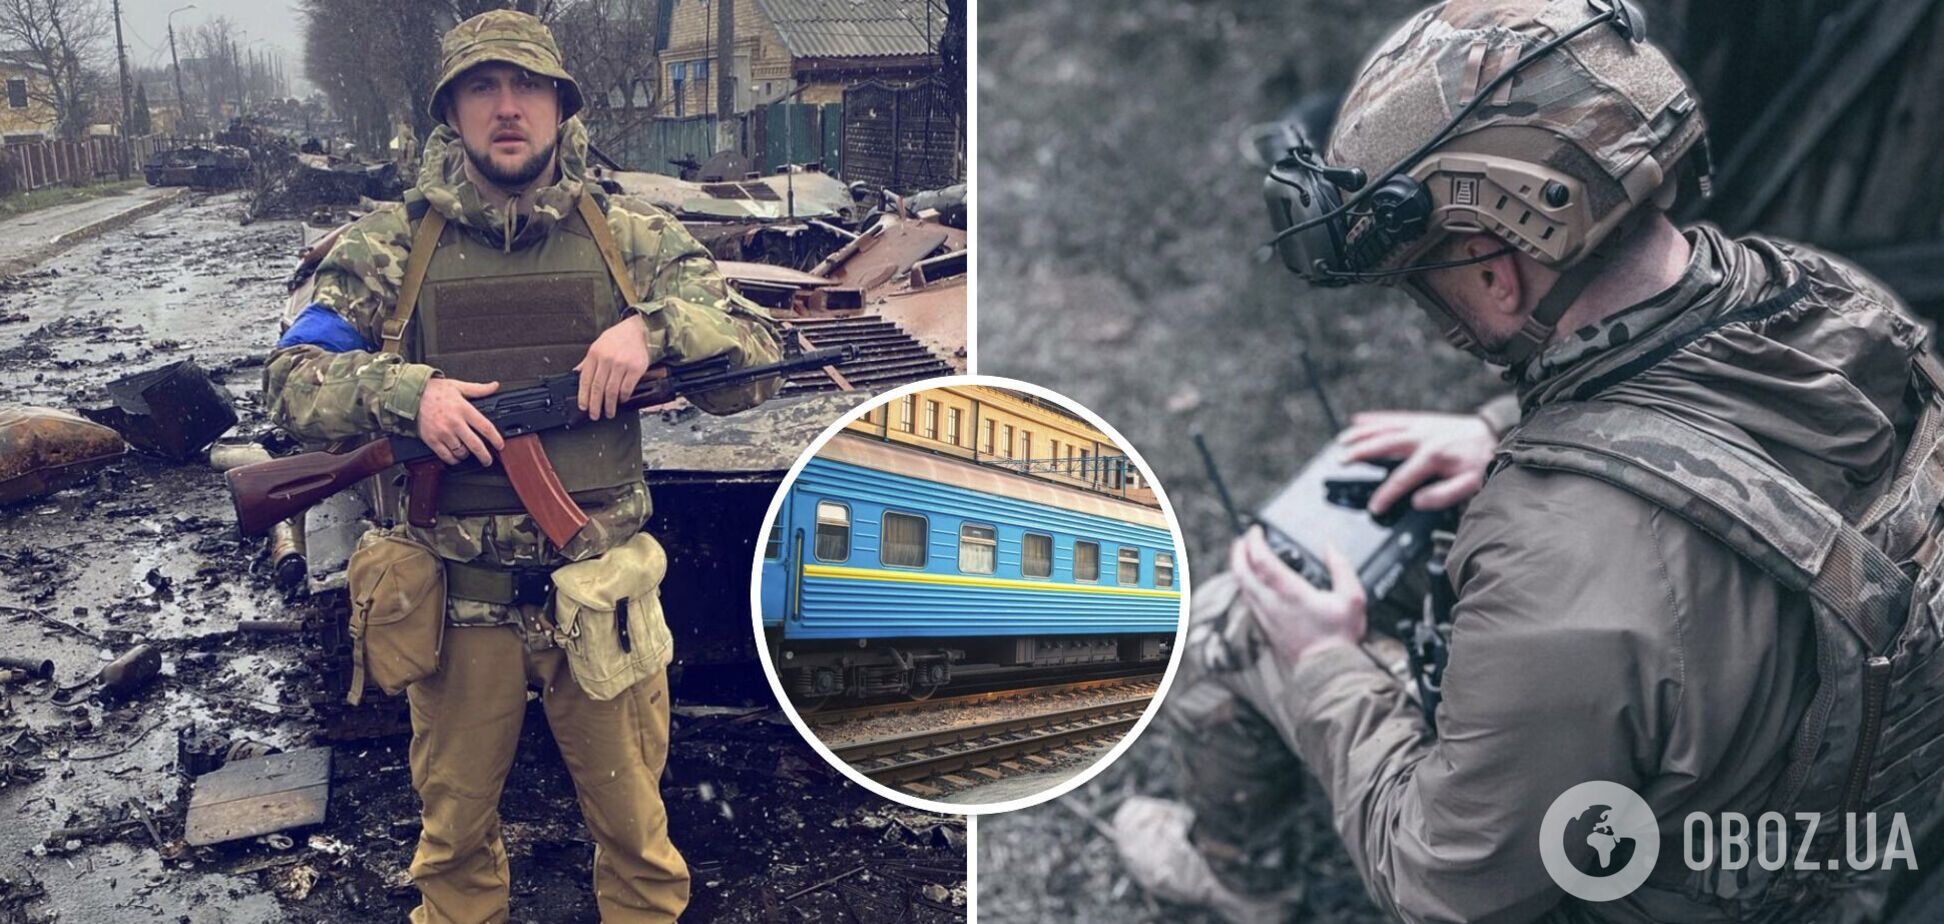 Репера-воина Ярмака обокрали в поезде Днепр-Киев, когда он спал: украли рюкзак с ноутбуком и камерой GoPro